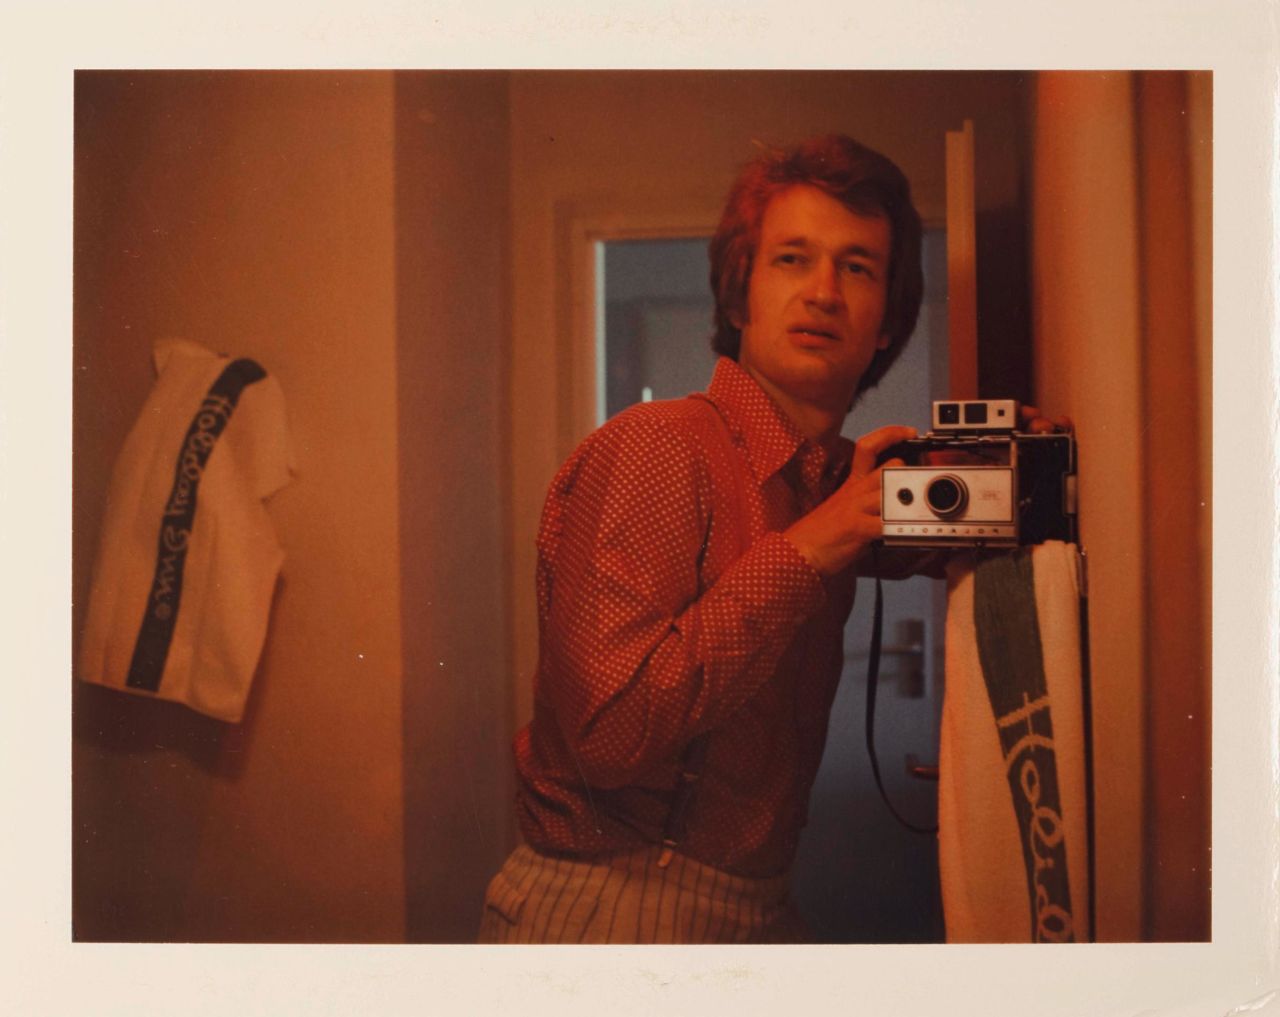 A 1975 self portrait by filmmaker Wim Wenders